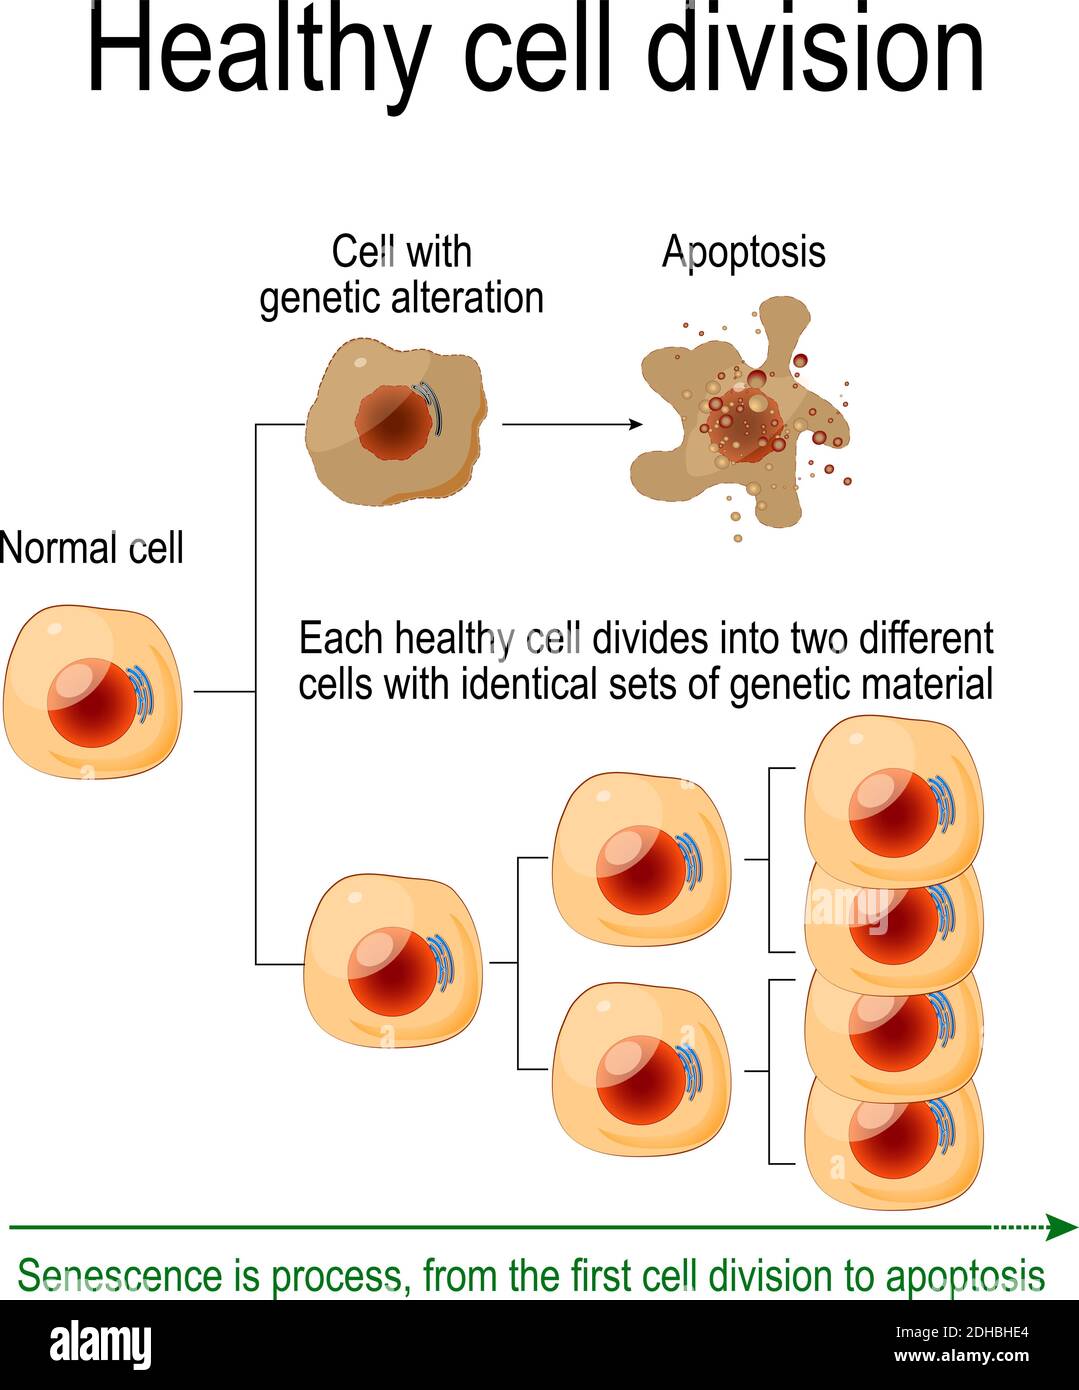 Une division cellulaire saine. Chaque cellule saine se divise en deux cellules différentes avec des ensembles identiques de matériel génétique. La sénescence est un processus Illustration de Vecteur